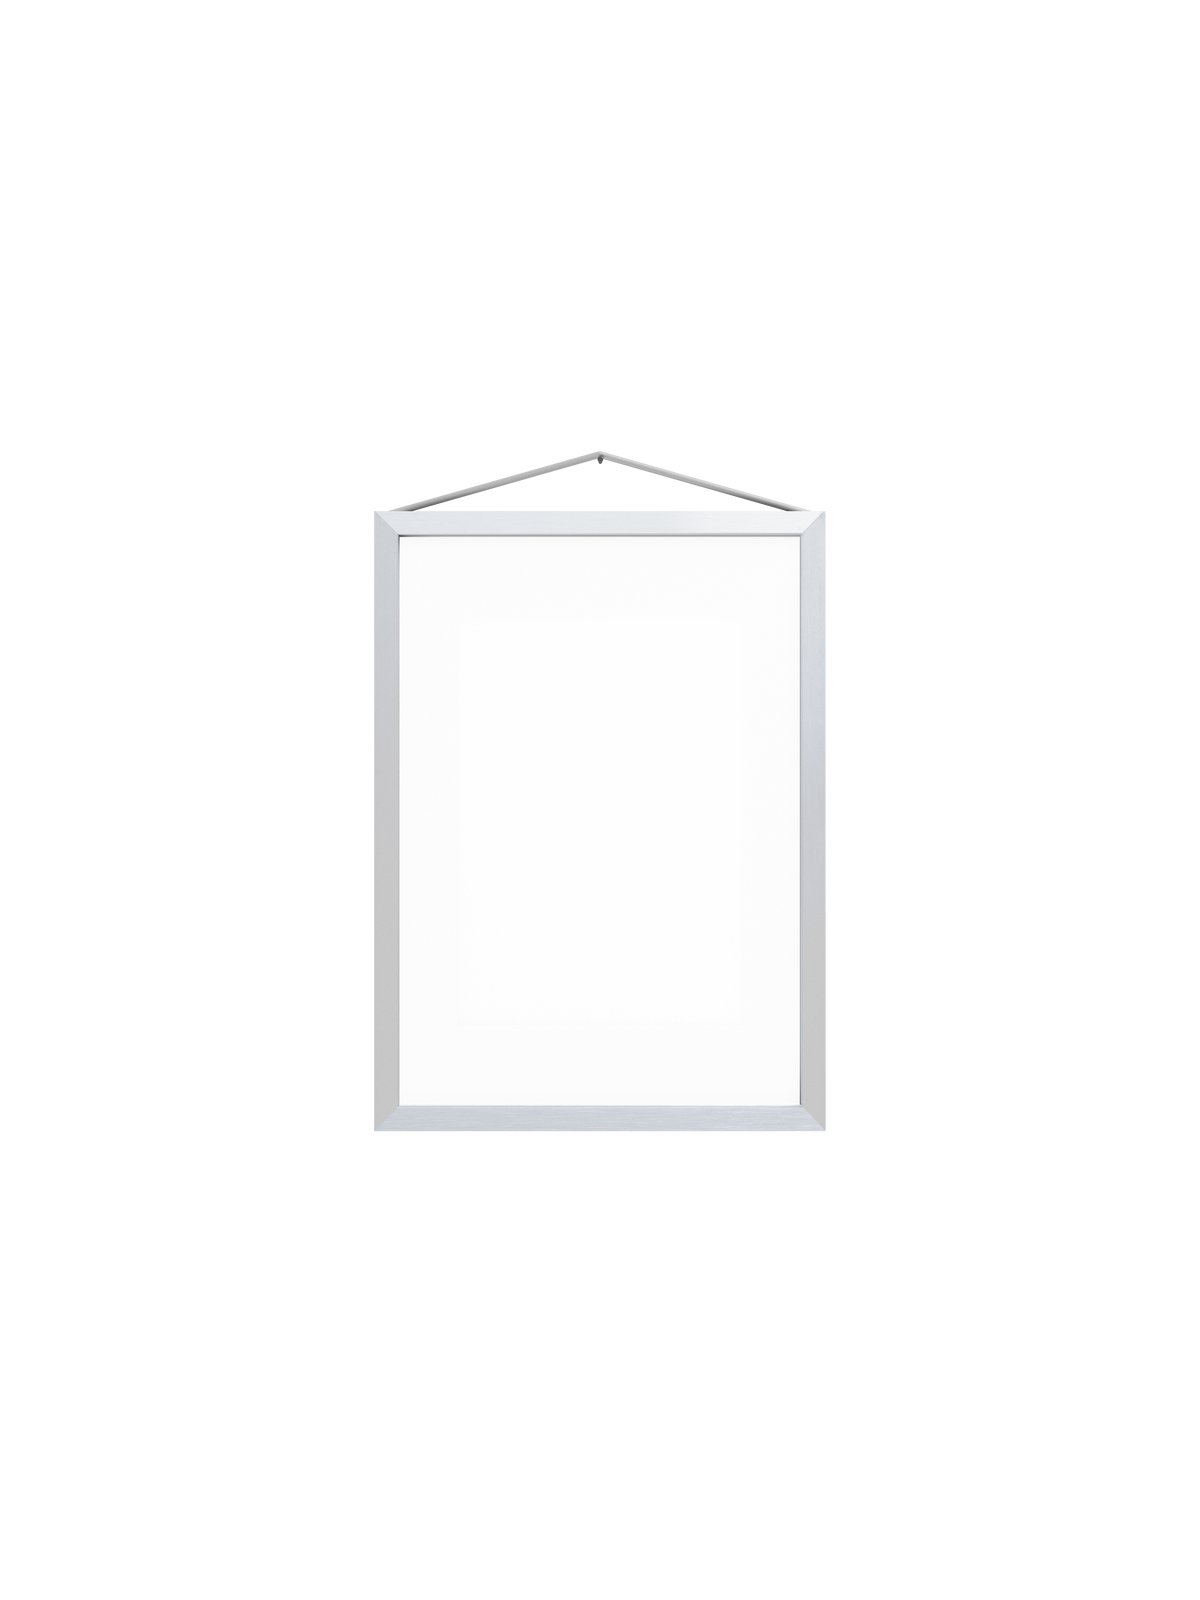 Moebe - Frame Bilderrahmen - Gebürstetes Aluminium